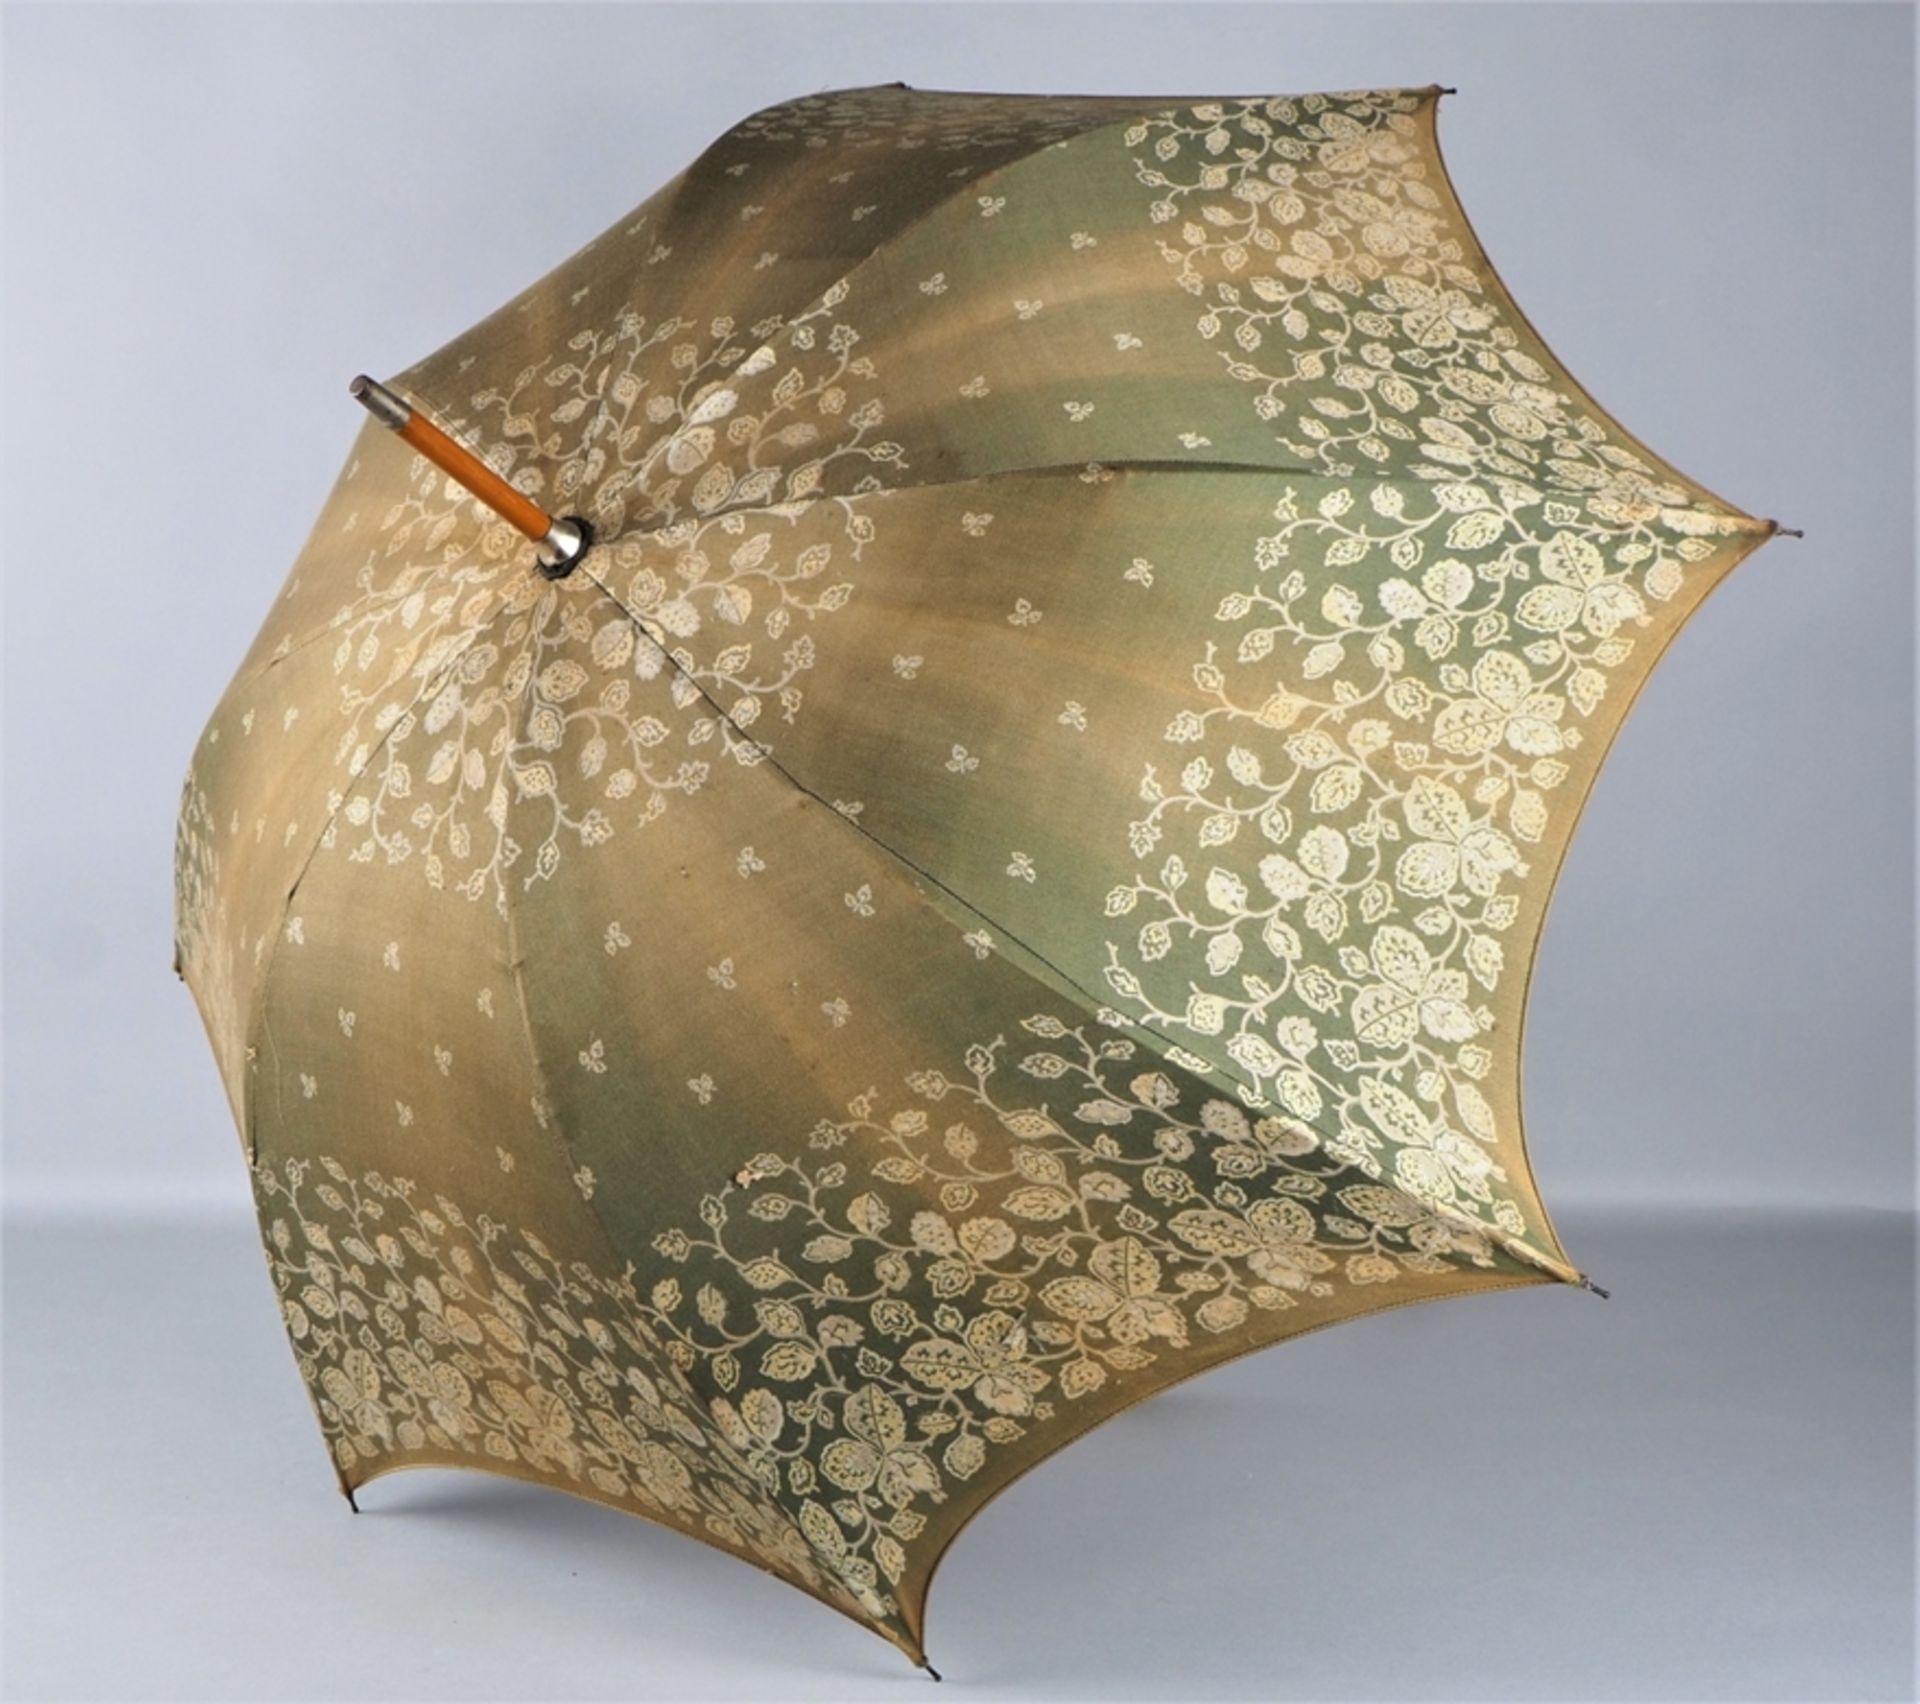 Antique umbrella / parasol around 1900 - Image 3 of 3